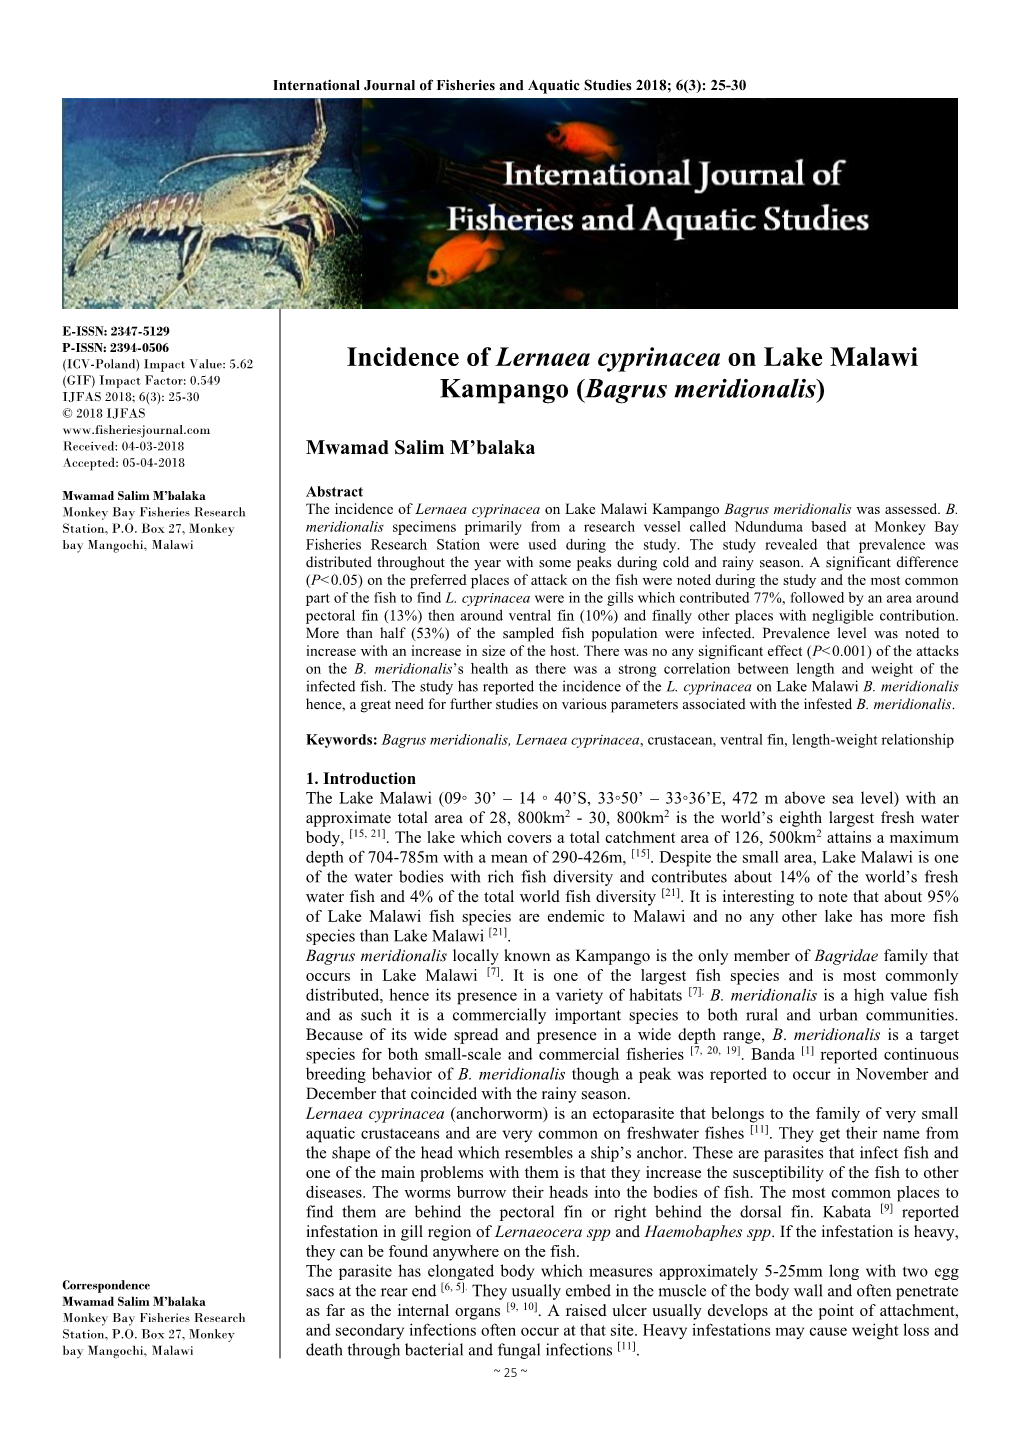 Incidence of Lernaea Cyprinacea on Lake Malawi Kampango (Bagrus